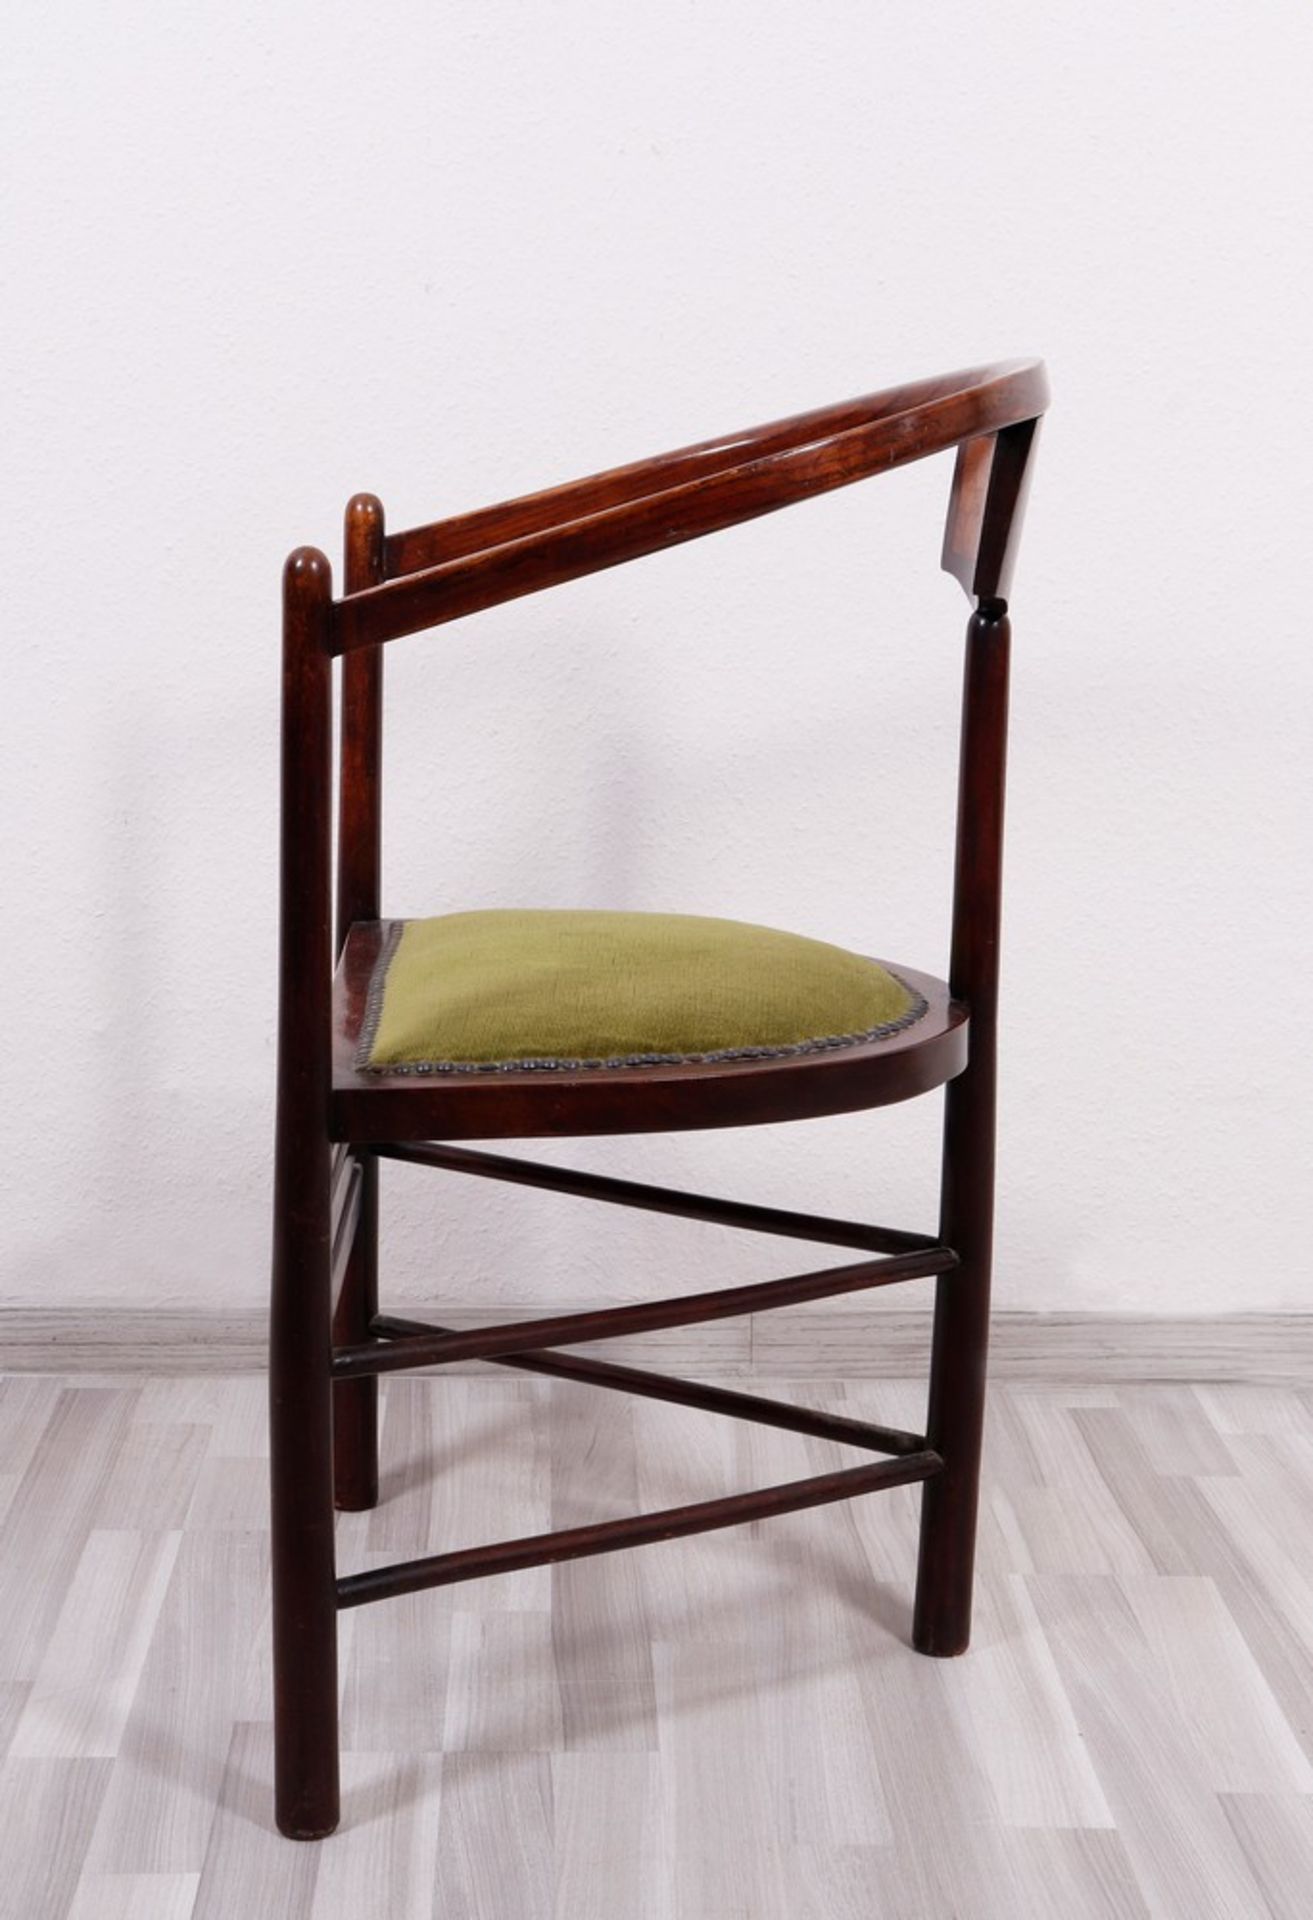 Art Nouveau corner chair, probably German, c. 1900 - Image 3 of 4